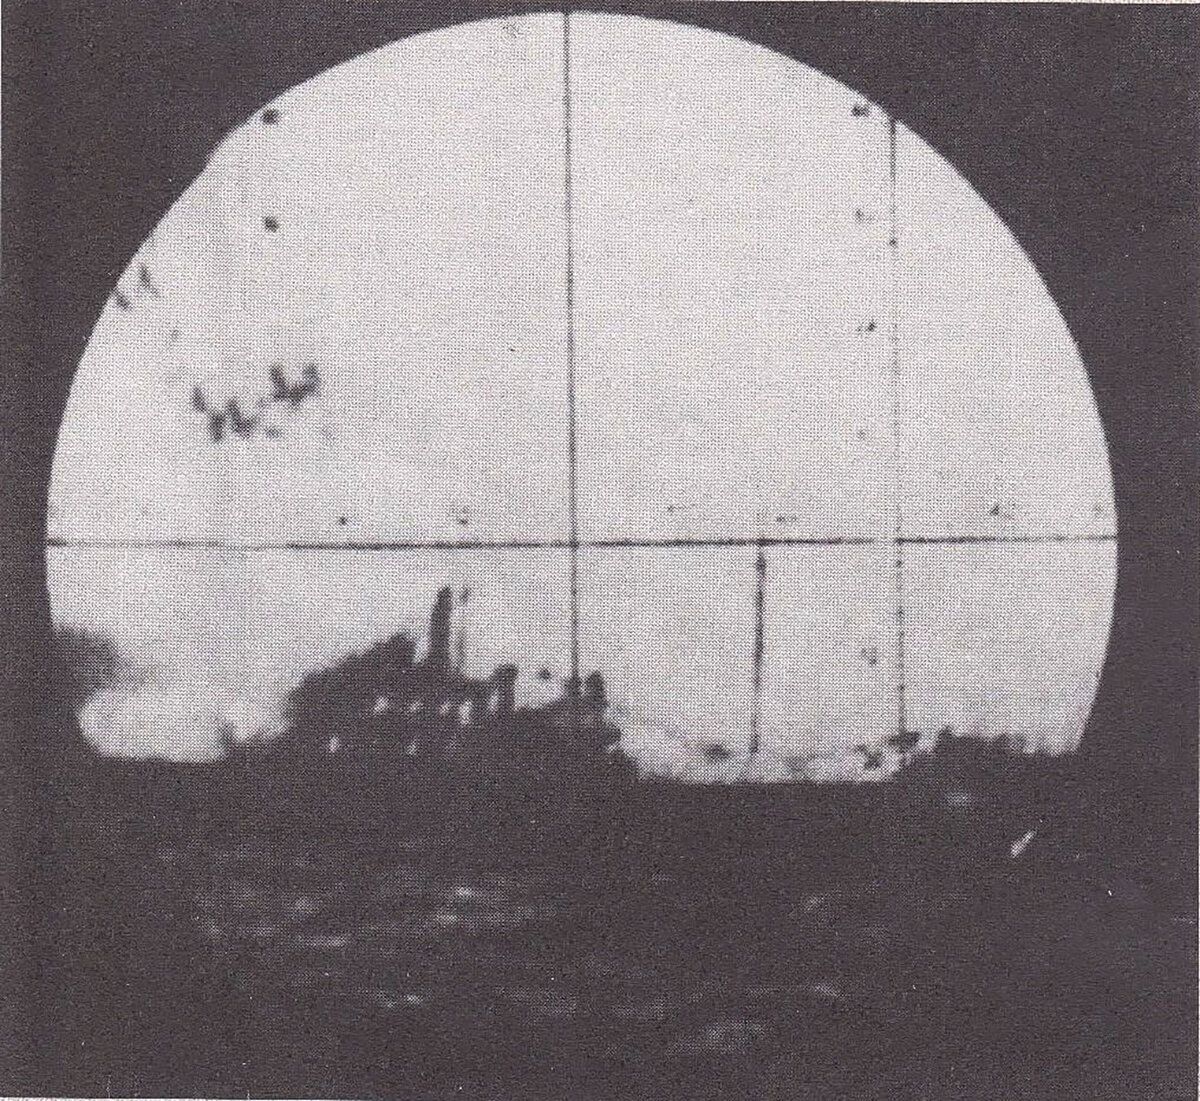 Φωτογραφία μέσα από το περισκόπιο του ιταλικού υποβρυχίου «Ντελφίνο»: η «ΕΛΛΗ» μόλις έχει βληθεί από την τορπίλη και βυθίζεται φλεγόμενη.